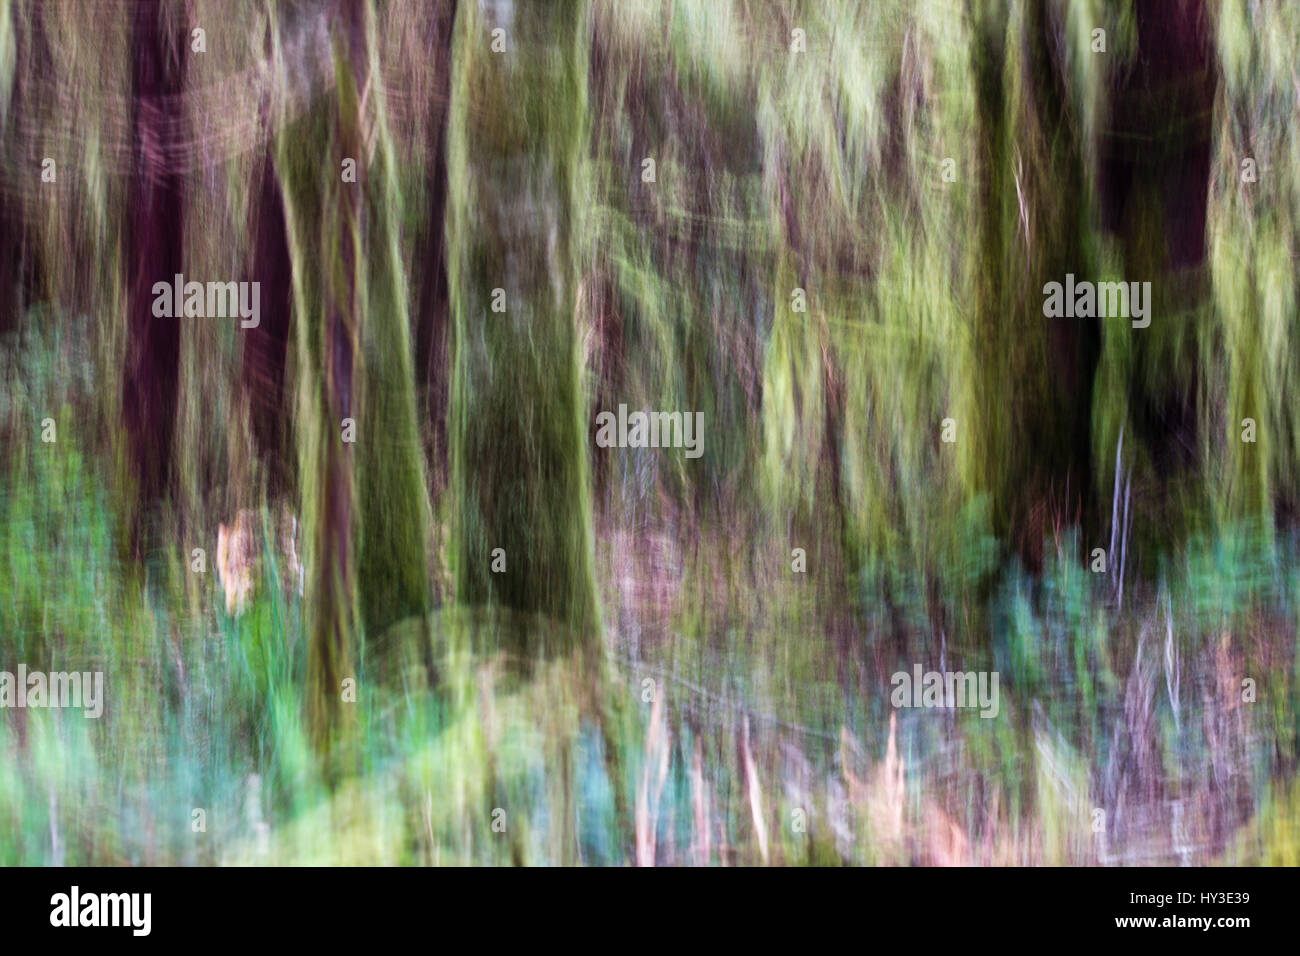 Bewegung verschwommen, abstrakte Bild des Regenwaldes Baumstämme und bunten Waldboden.  Moosbedeckten Baumstämme leuchten grün mit Hintergrundbeleuchtung Stockfoto